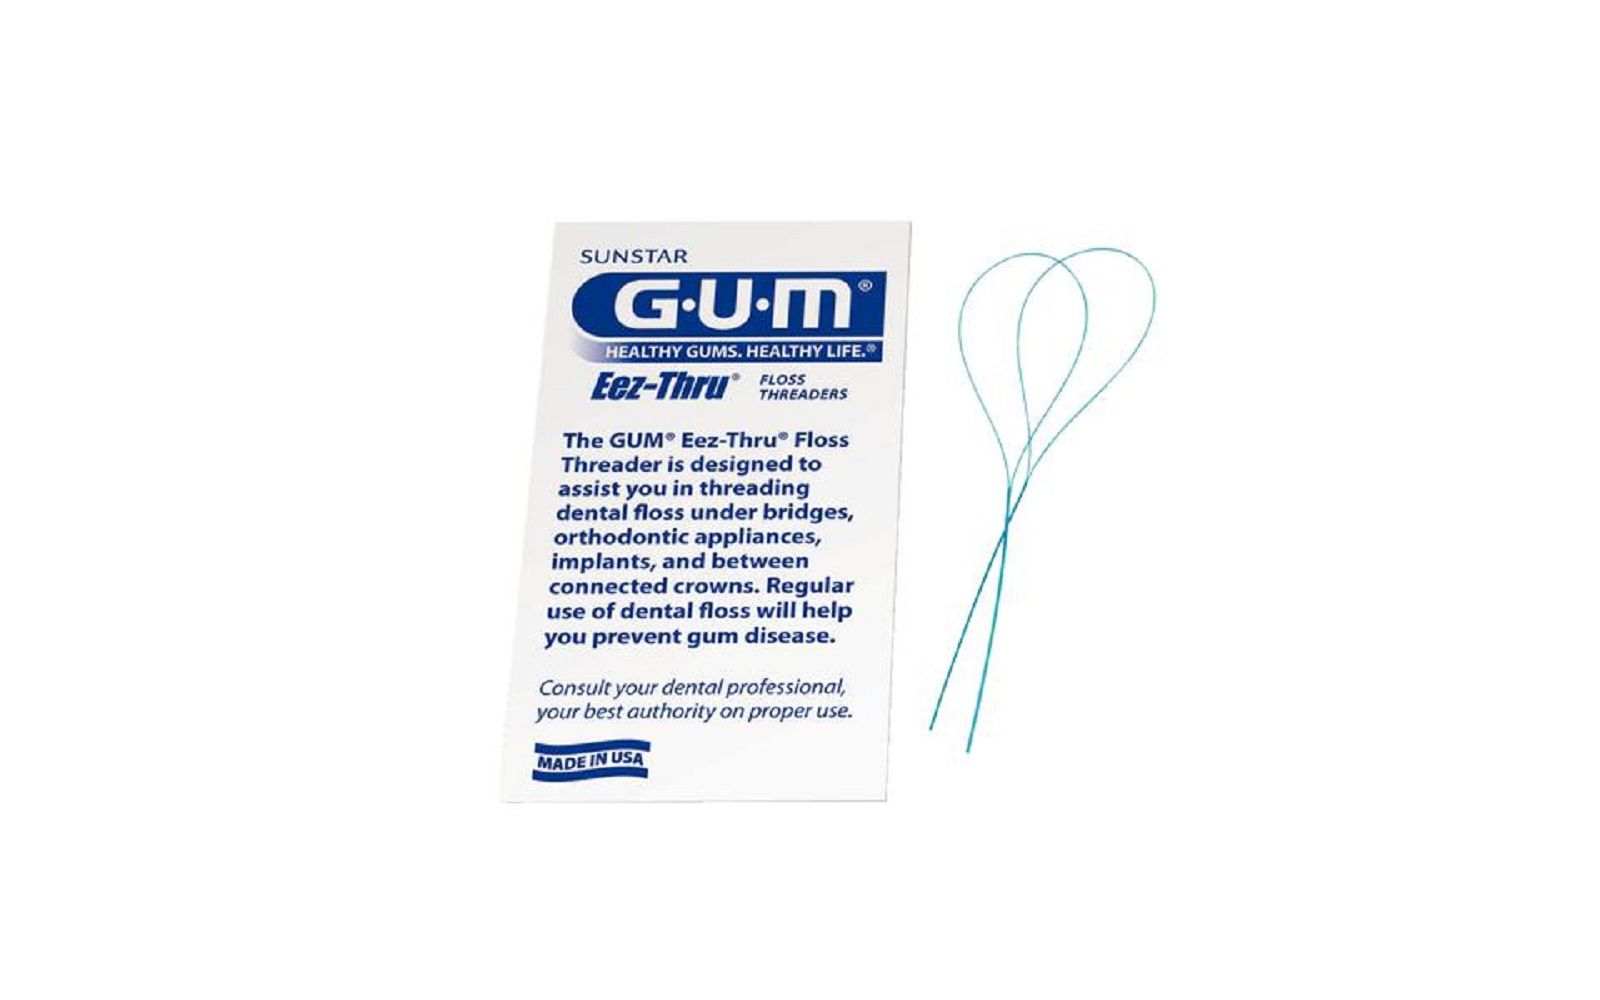 Gum® eez-thru® floss threaders